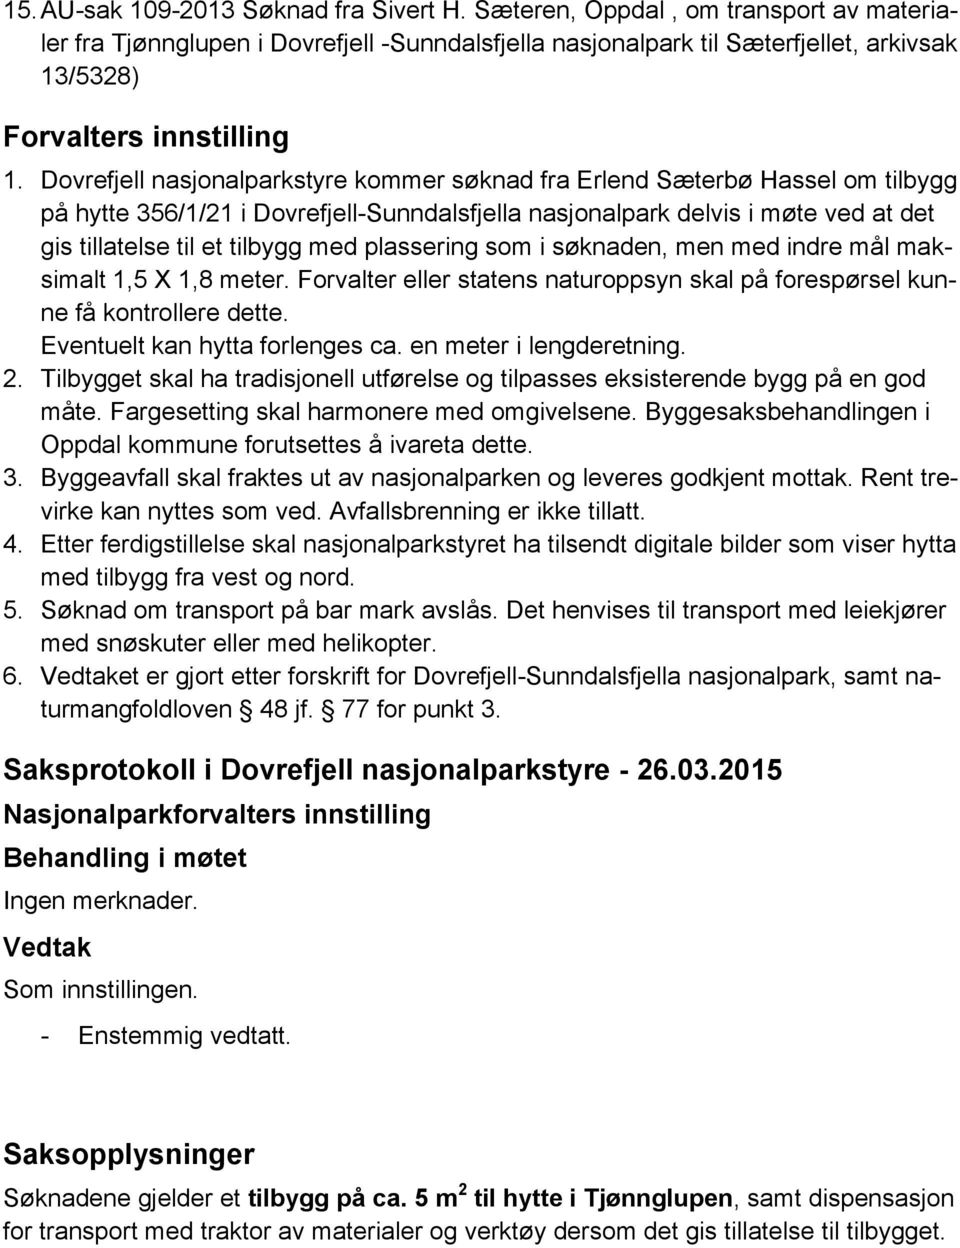 Dovrefjell nasjonalparkstyre kommer søknad fra Erlend Sæterbø Hassel om tilbygg på hytte 356/1/21 i Dovrefjell-Sunndalsfjella nasjonalpark delvis i møte ved at det gis tillatelse til et tilbygg med